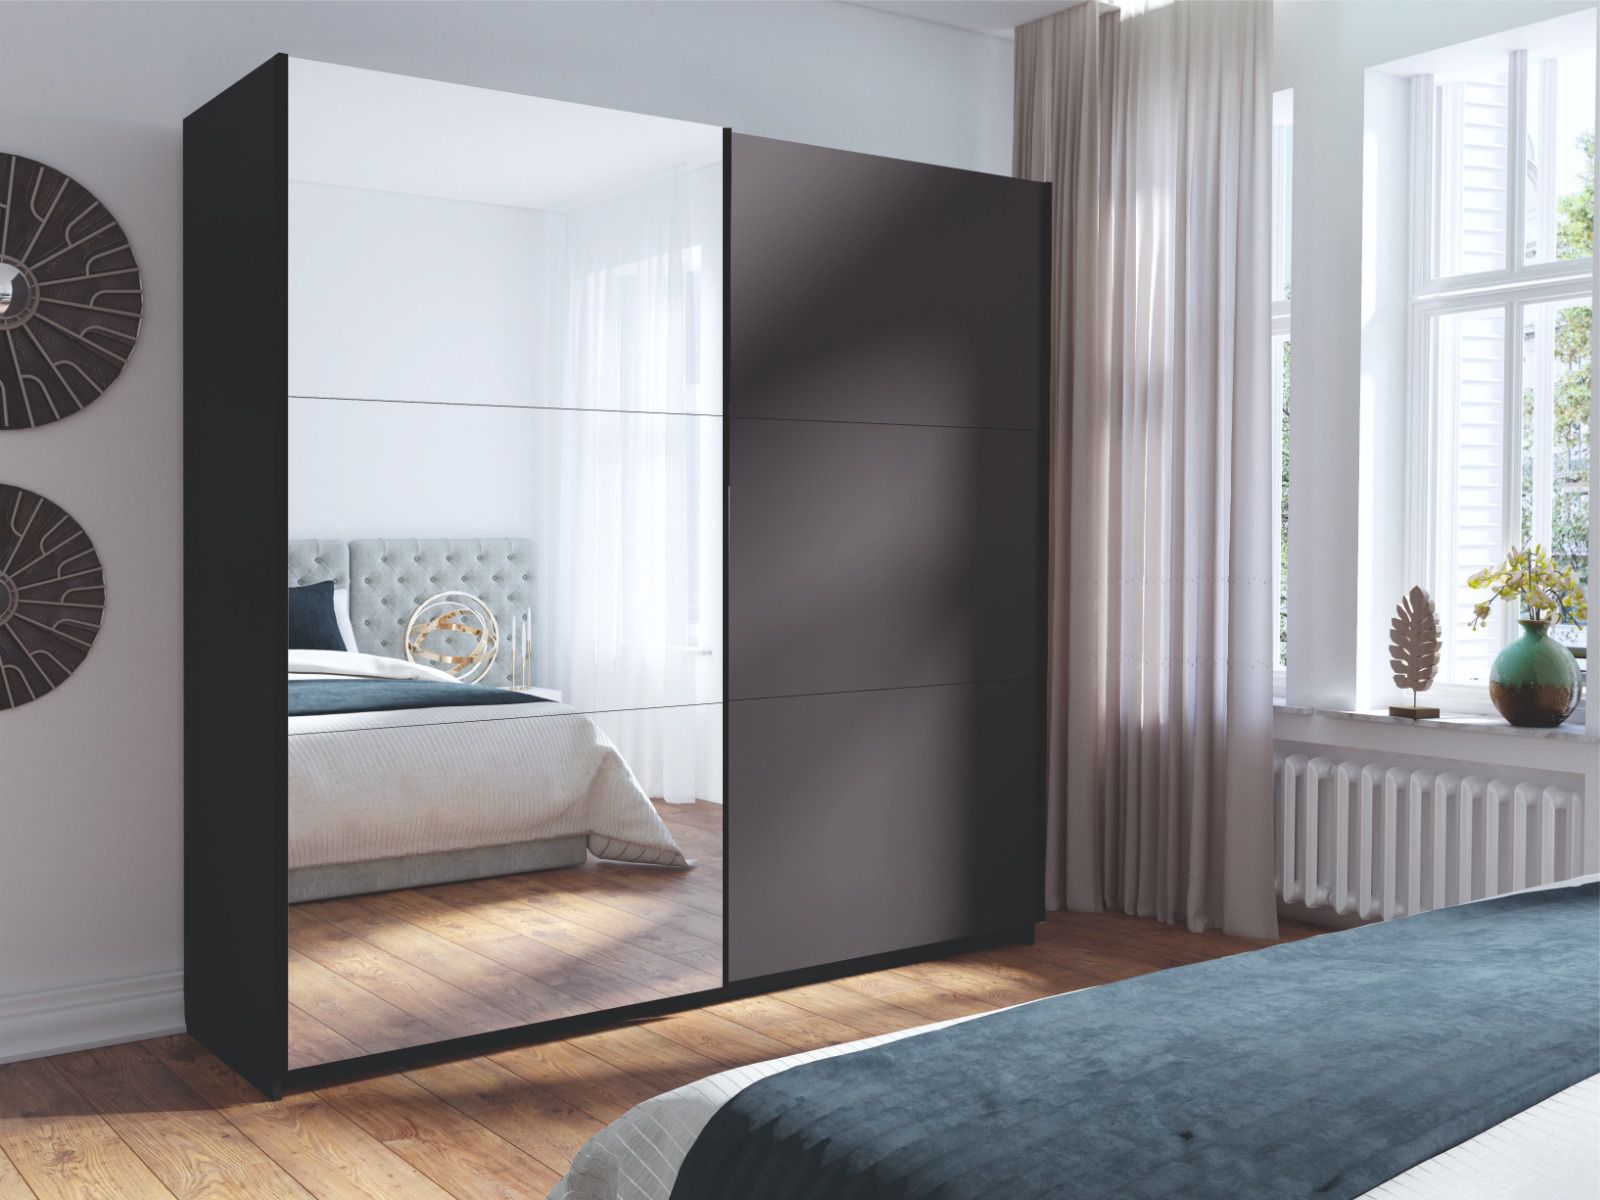 Kleiderschrank mit Spiegel Lamia, grafitfarben, 6 Fächer, 1 Kleiderstange, 2 Meter breit, für Schlafzimmer, Schiebetürenschrank, Spiegeltürenschrank